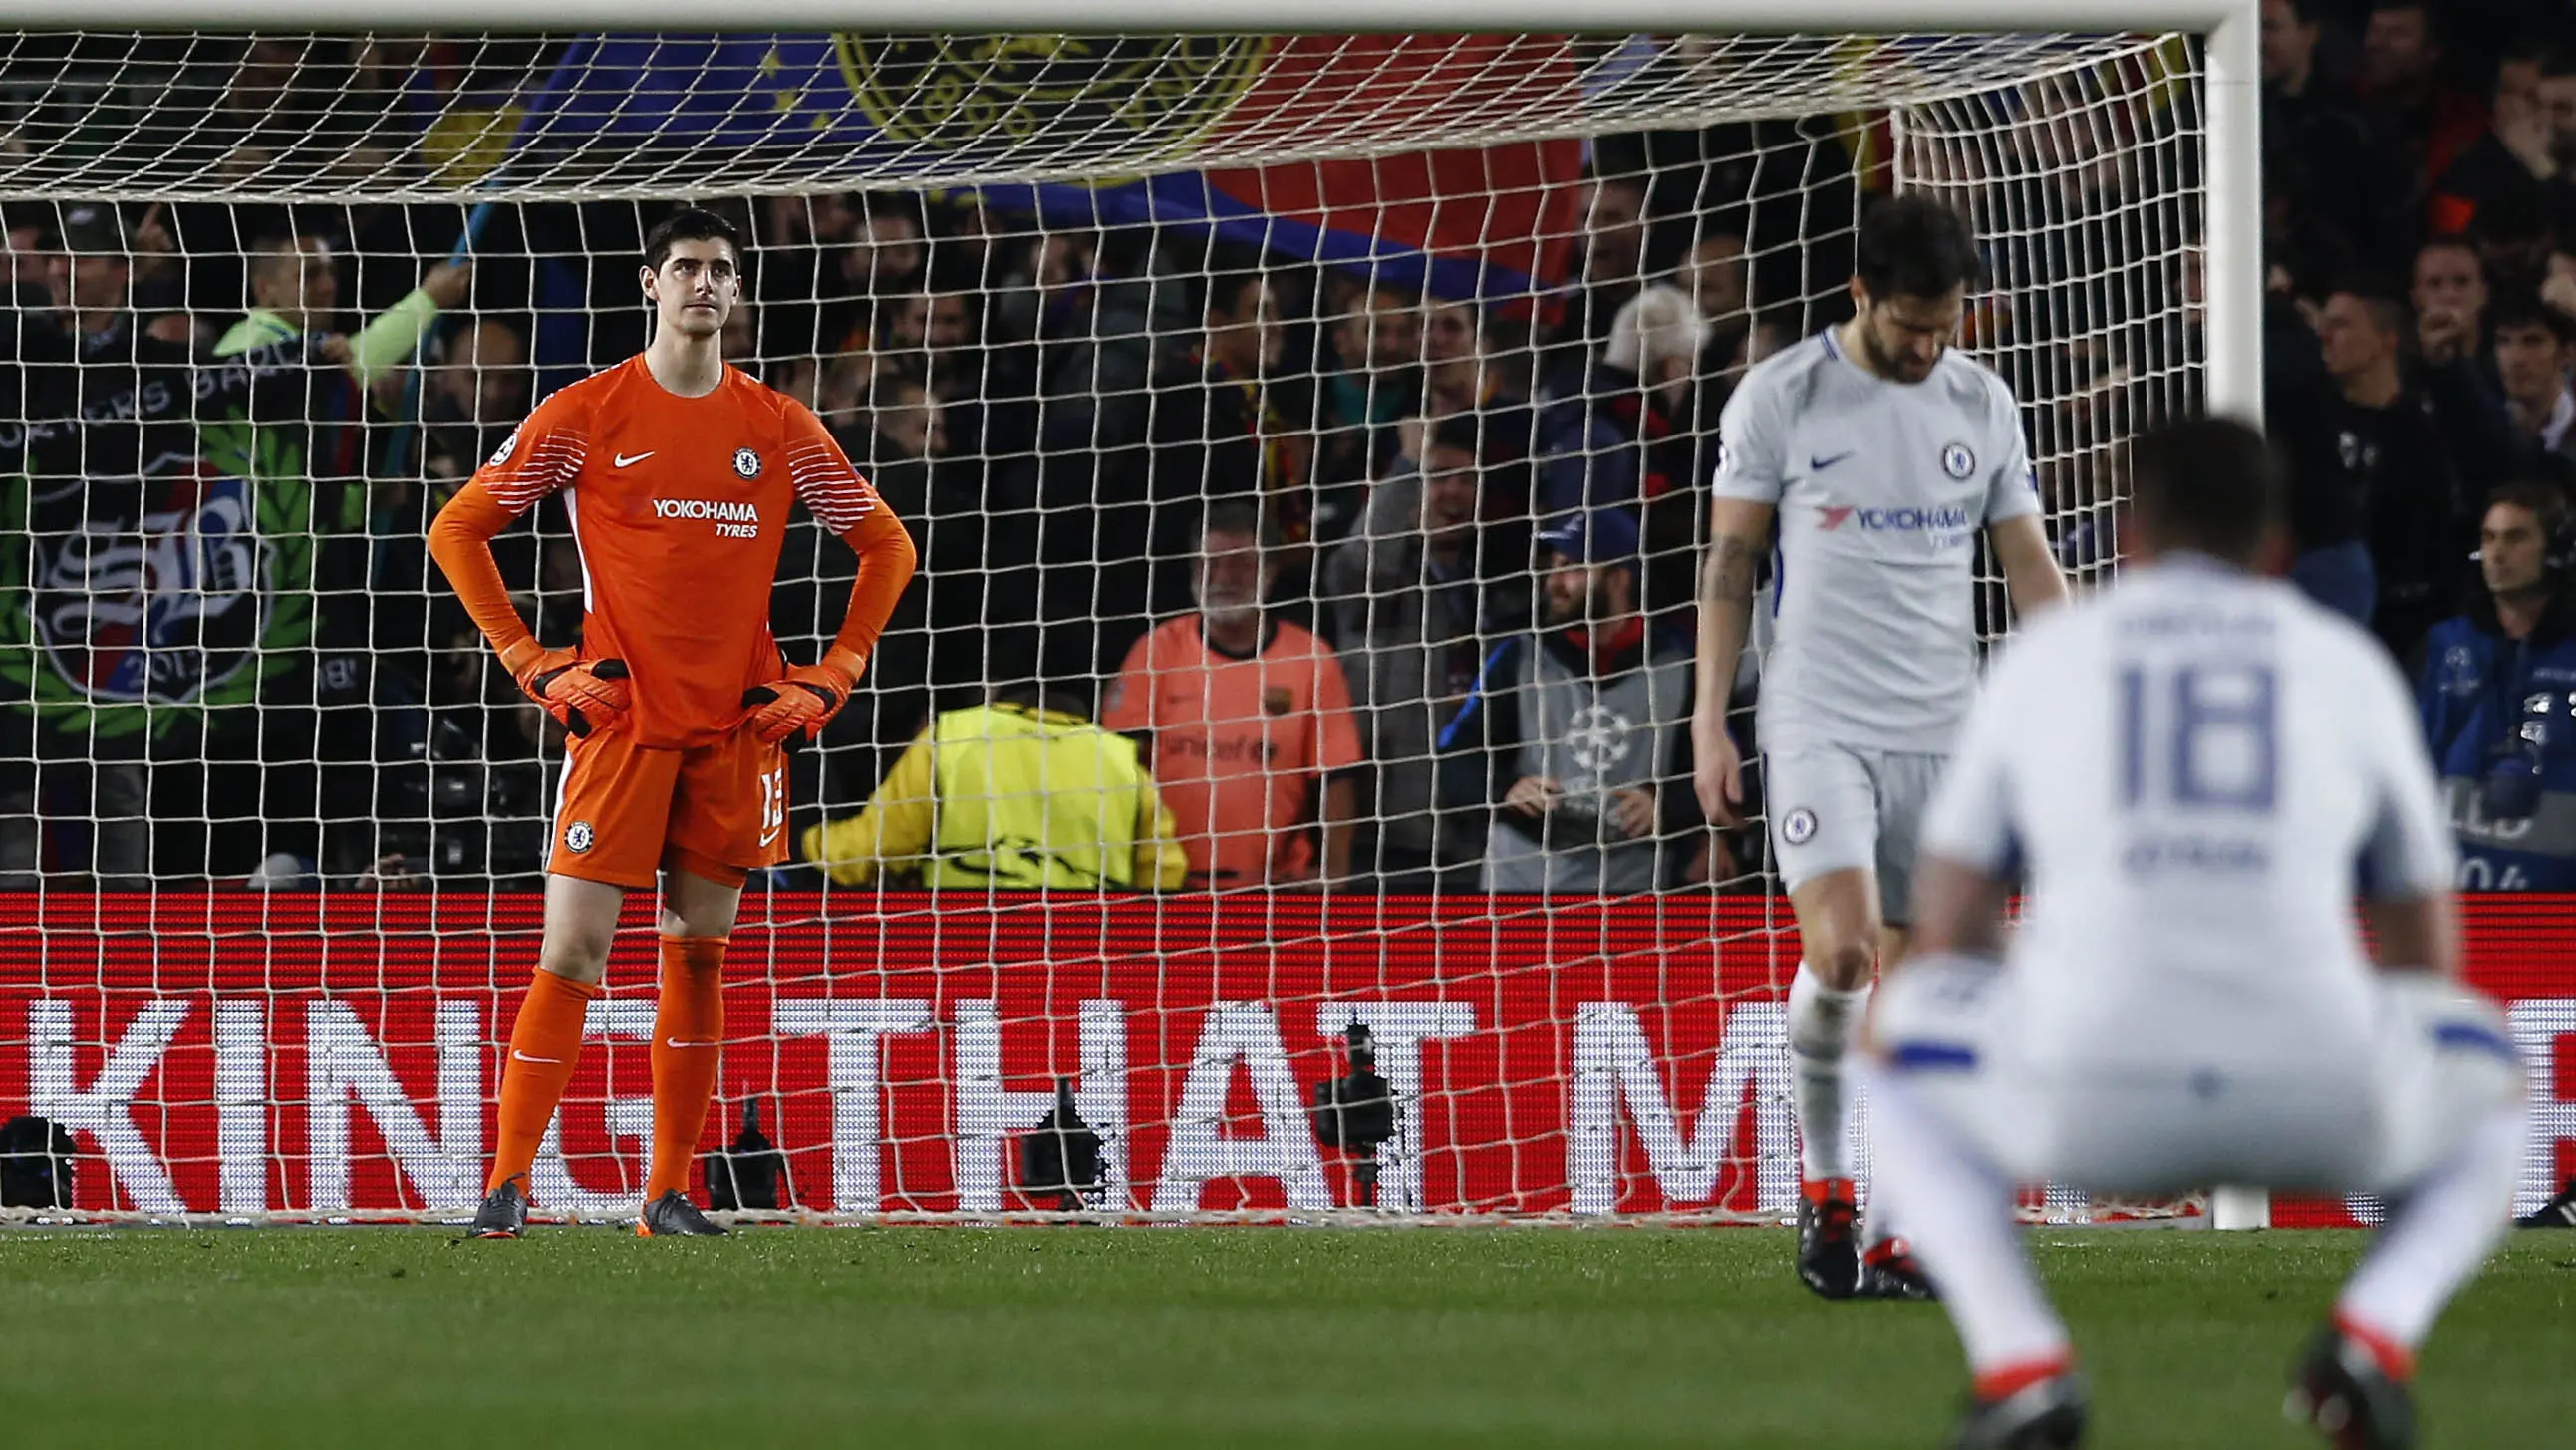 Kiper Chelsea, Thibaut Courtois, tampak kecewa usai disingkirkan Barcelona pada laga Liga Champions di Stadion Camp Nou, Kamis (15/3/2018) AP/Manu Fernandez)